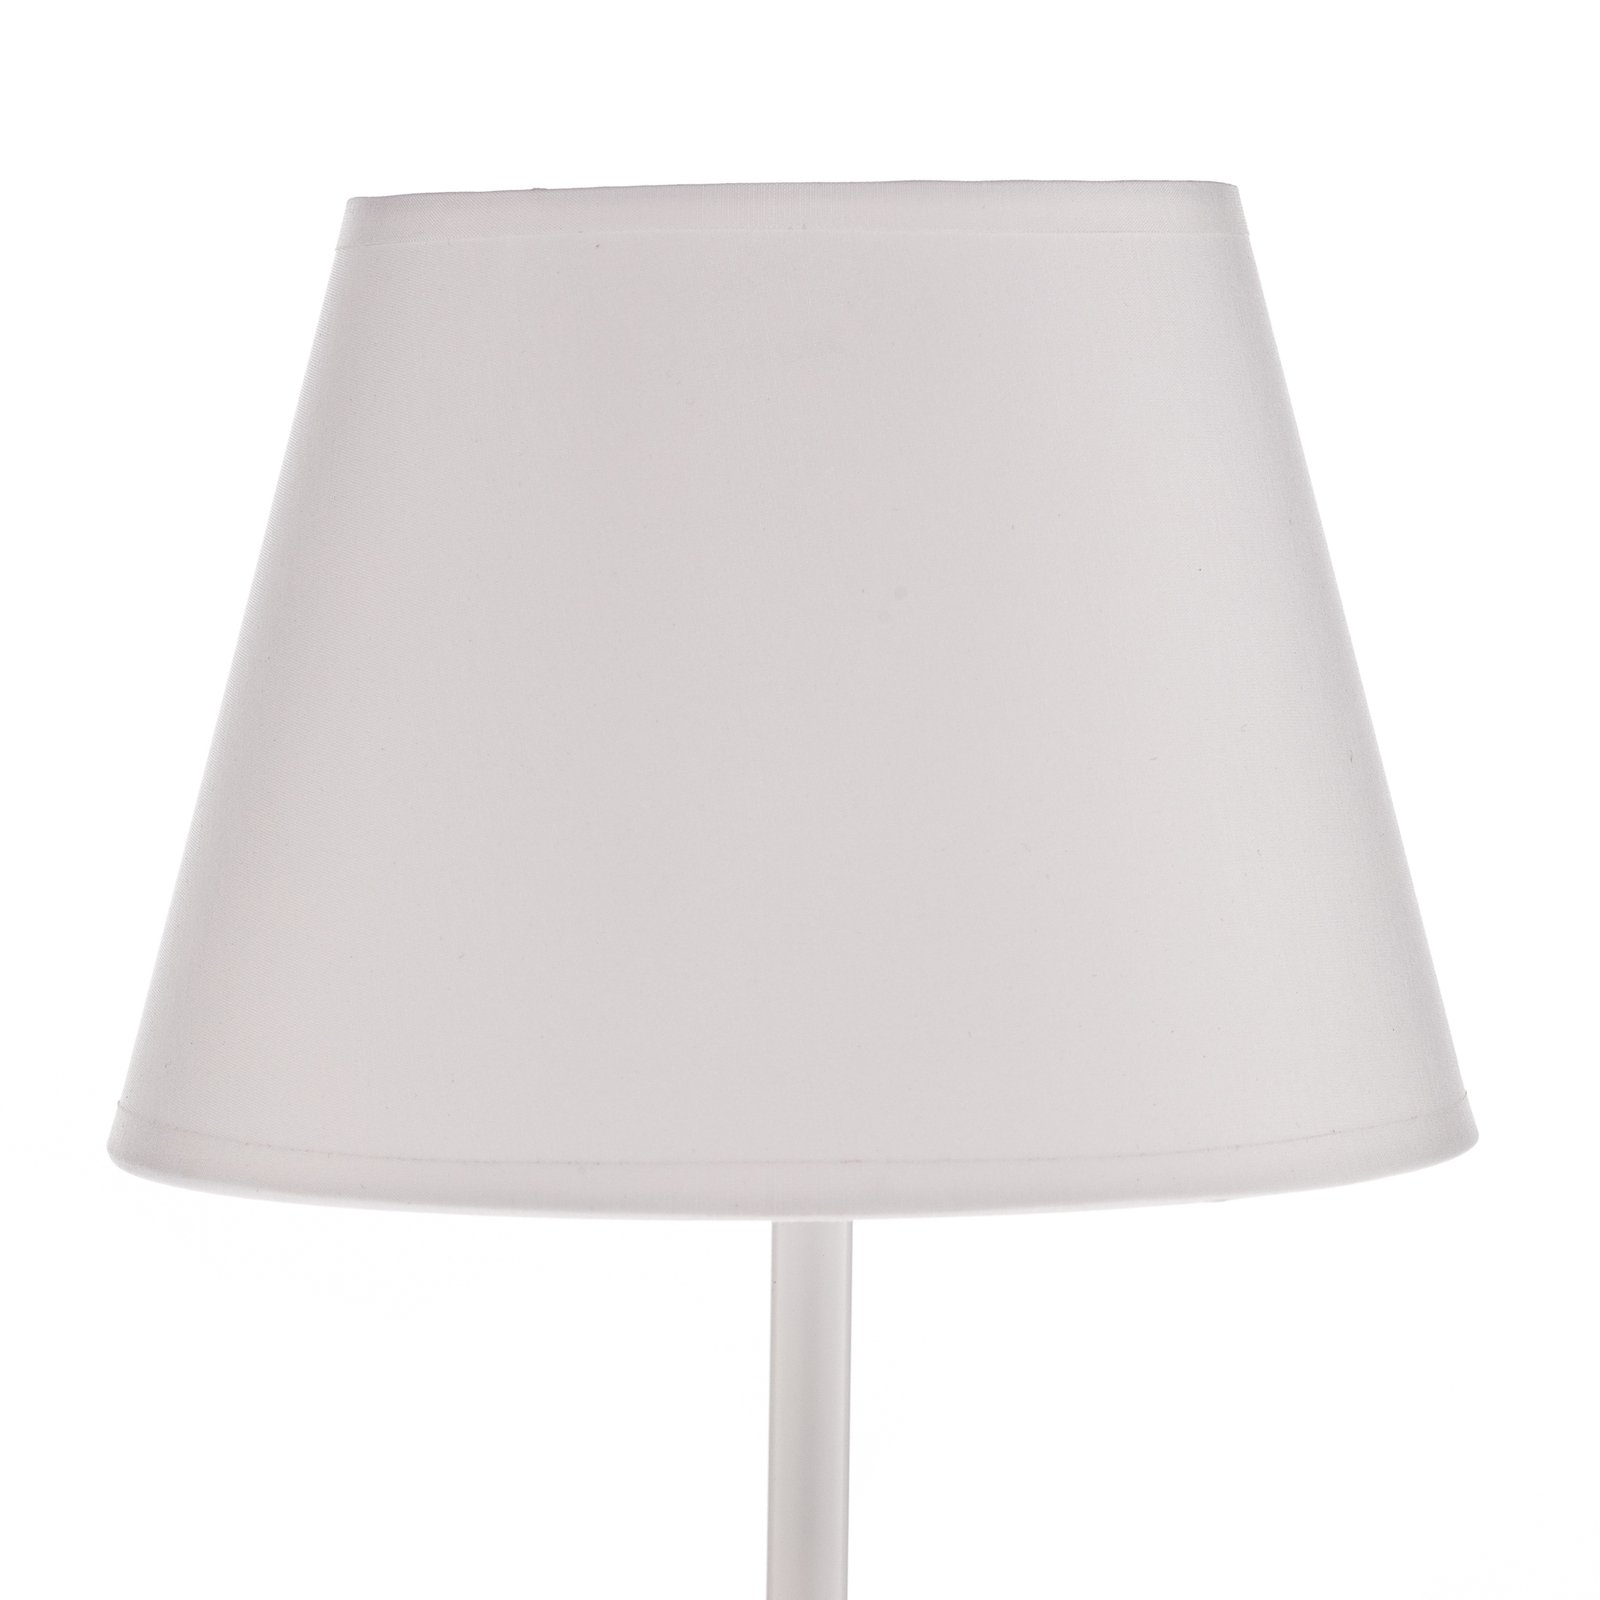 Lampa stołowa Soho, stożkowa wysokość 33 cm, biała